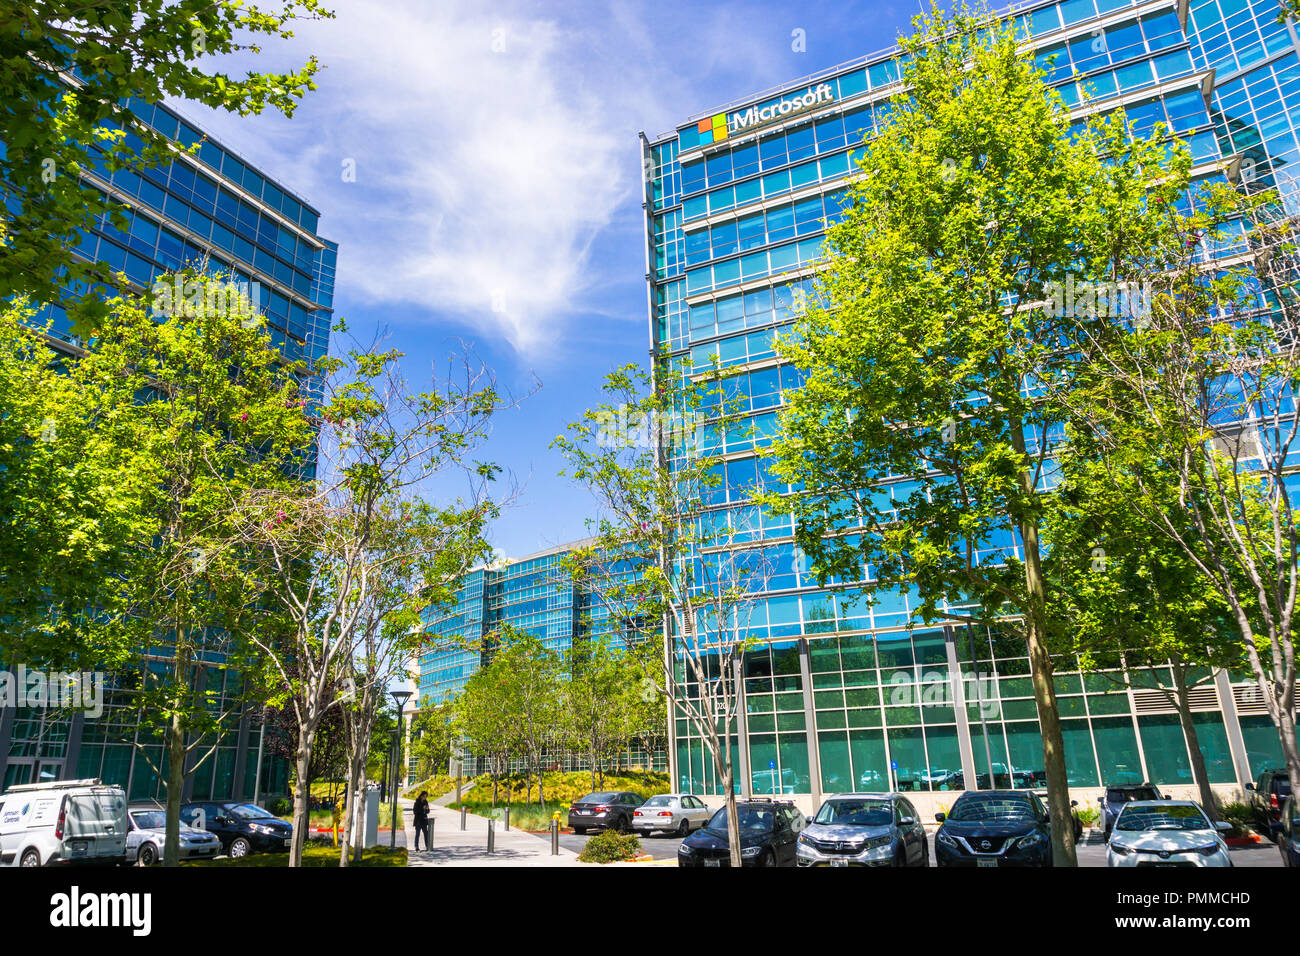 3 mai 2018 Sunnyvale / CA / USA - siège social de Microsoft situé dans la Silicon Valley, South San Francisco bay area Banque D'Images